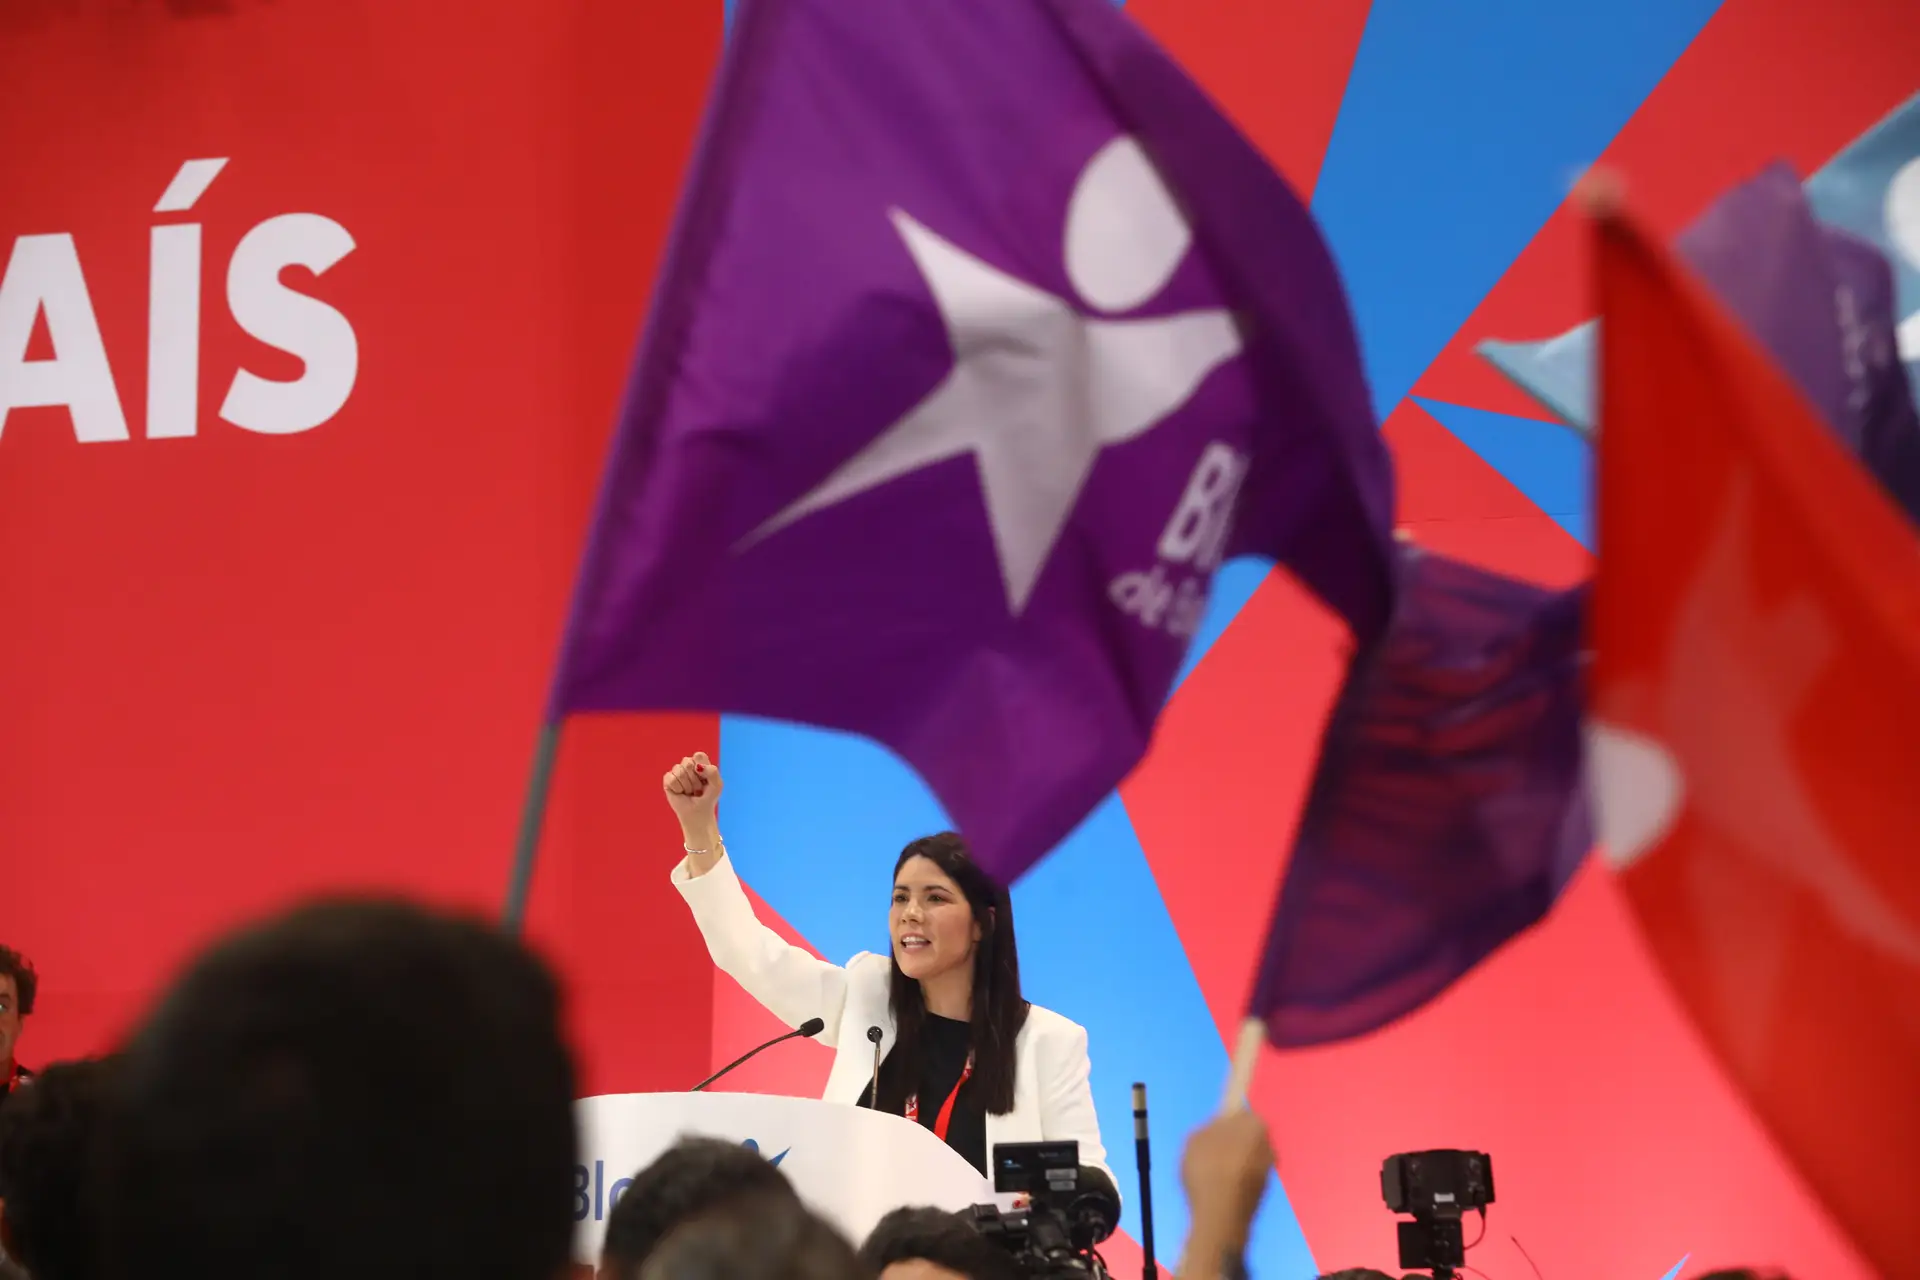 Mariana Mortágua aclamada nova líder do Bloco de Esquerda: “é só o começo, ainda não viram nada”